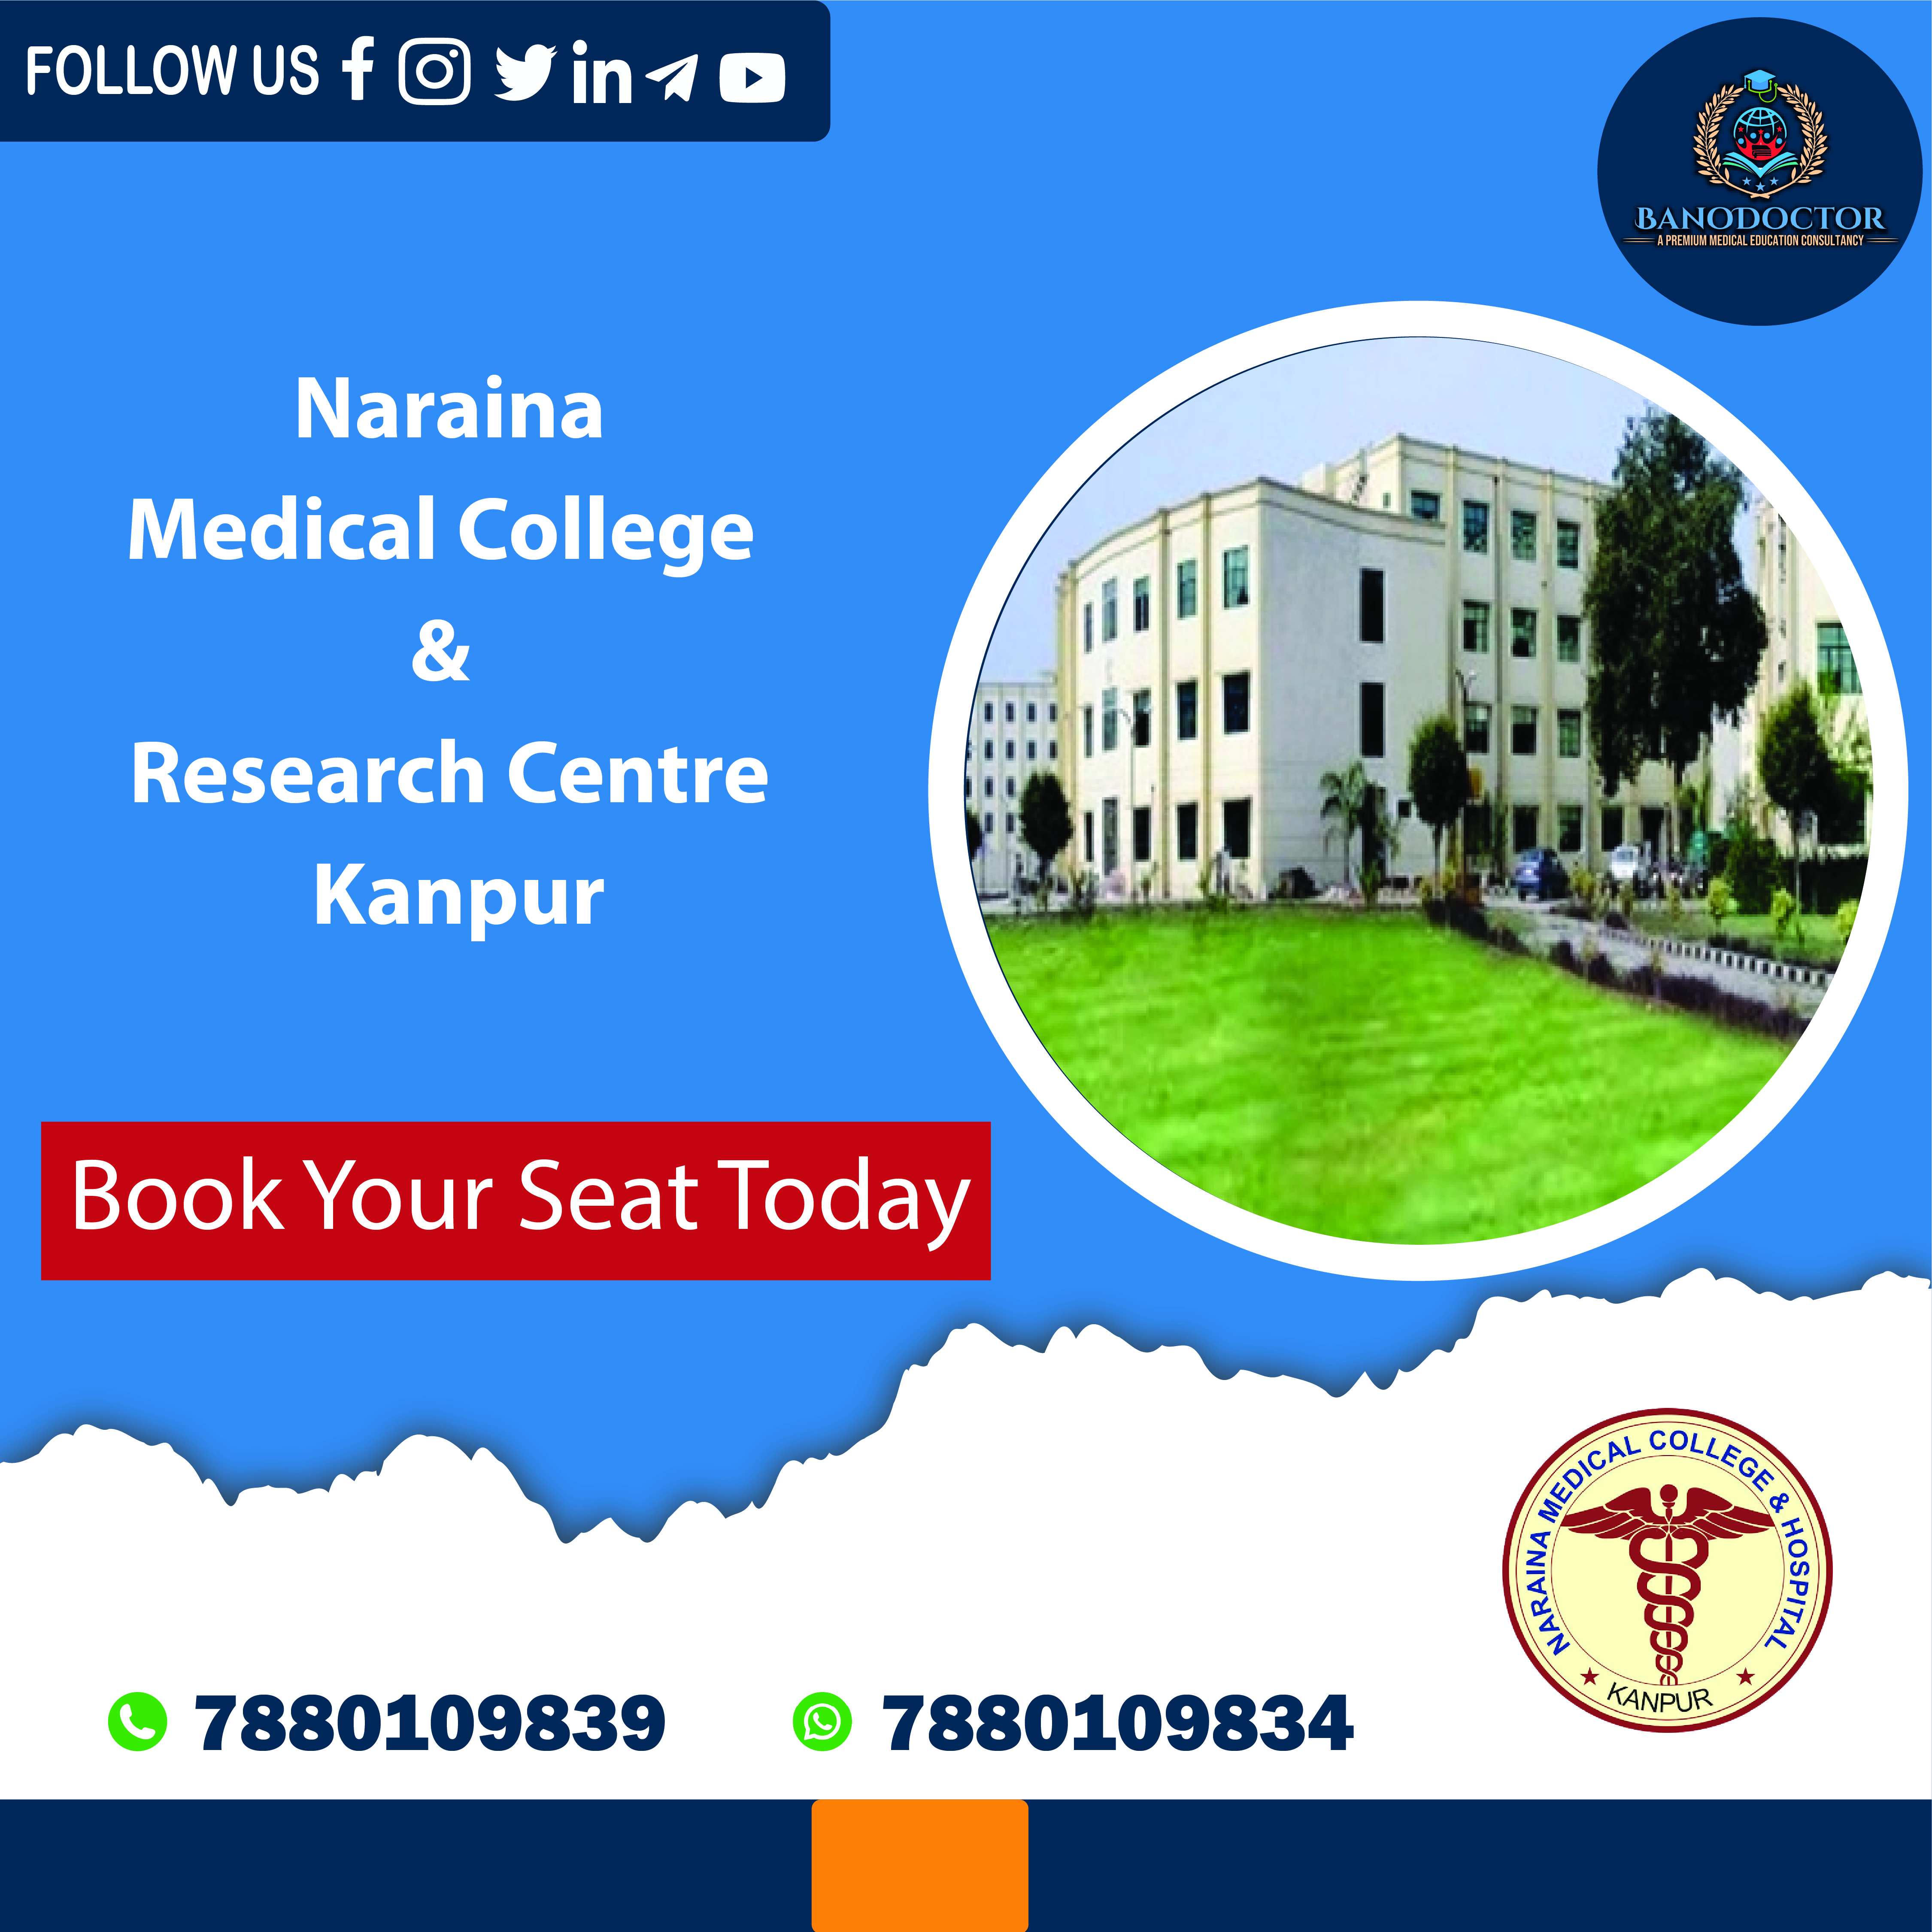 Naraina Medical College & Hospital Kanpur, Uttar Pradesh